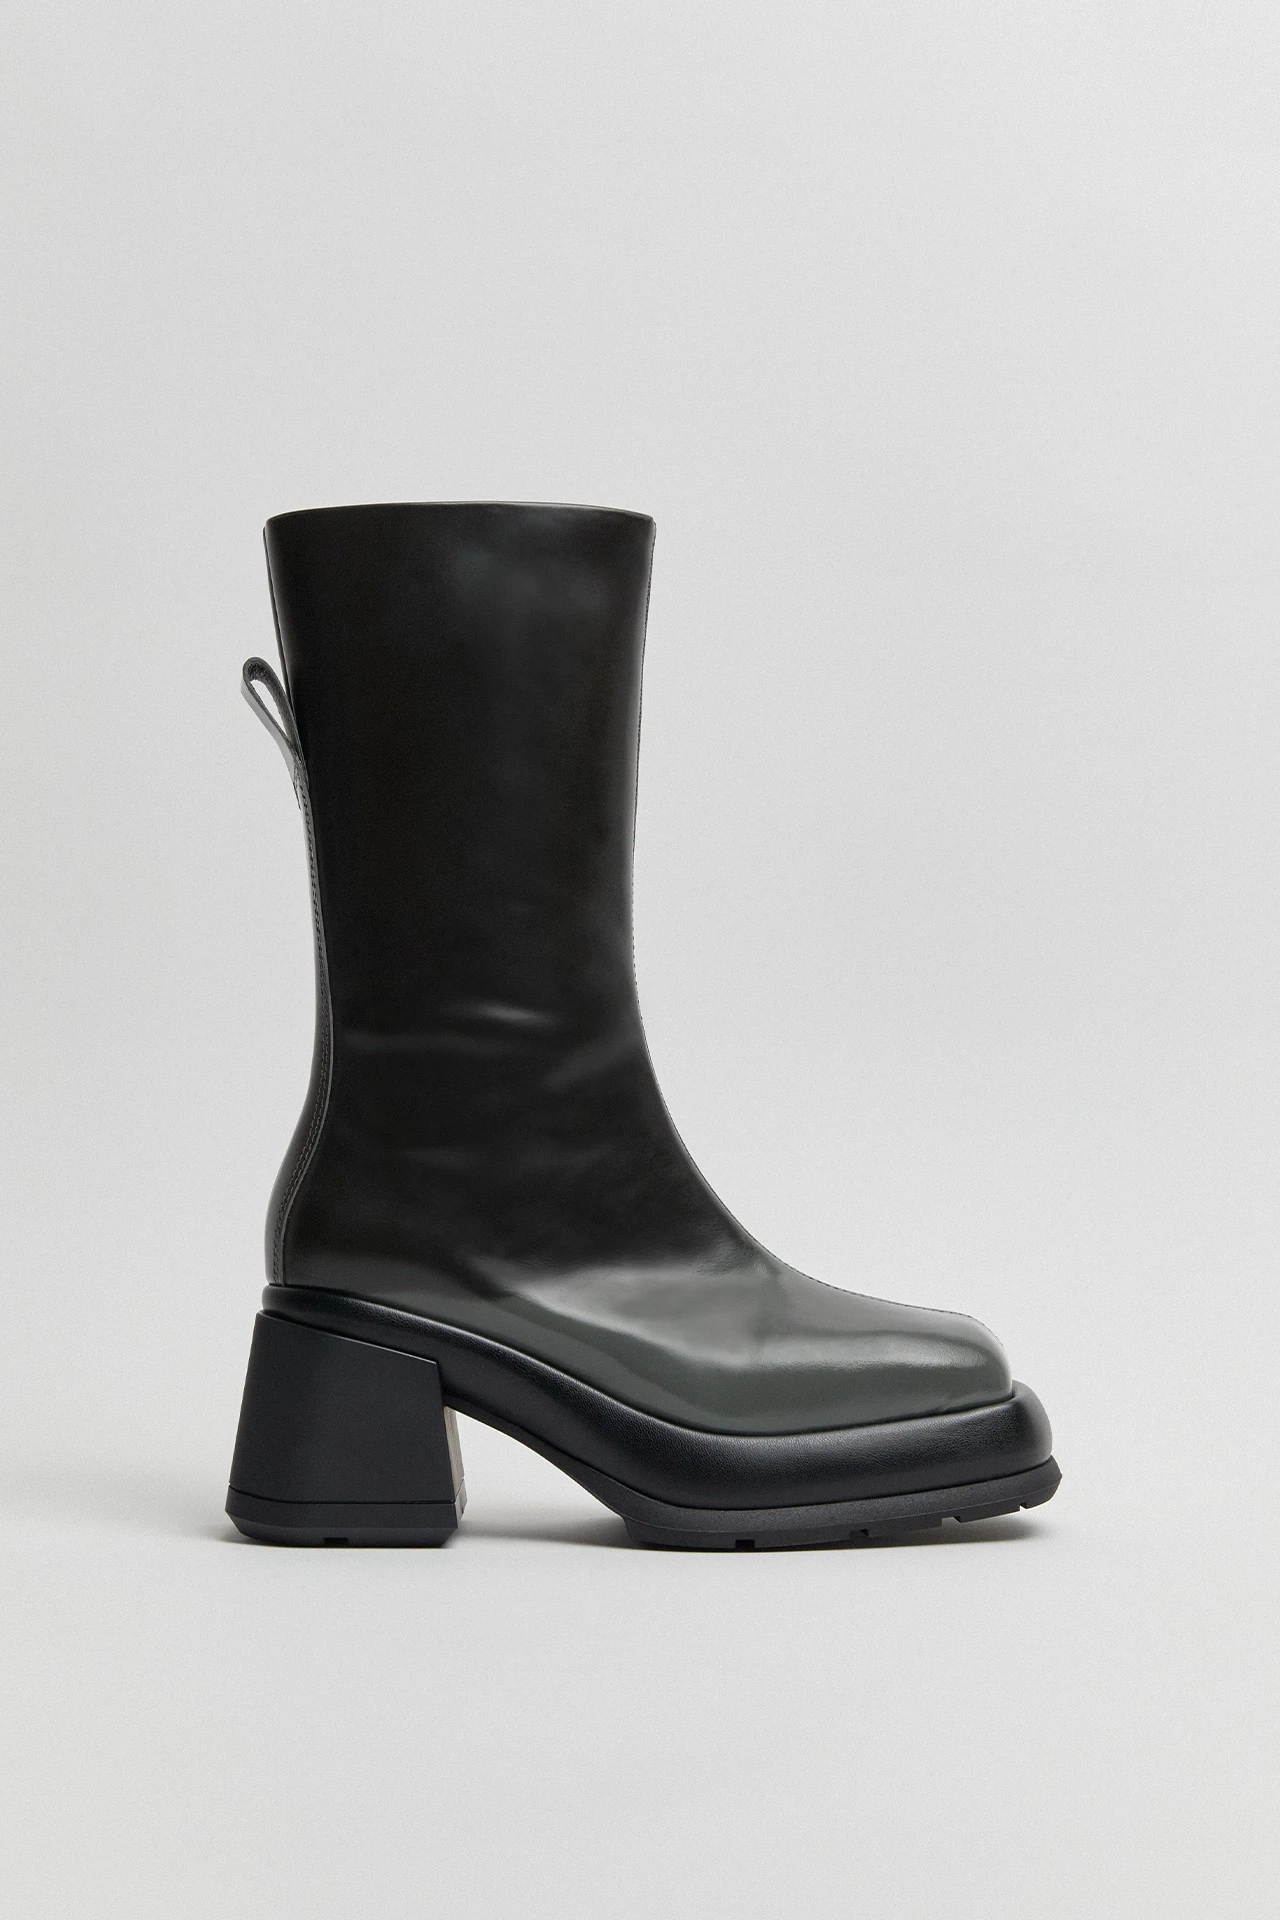 E8-cassia-grey-boots-01